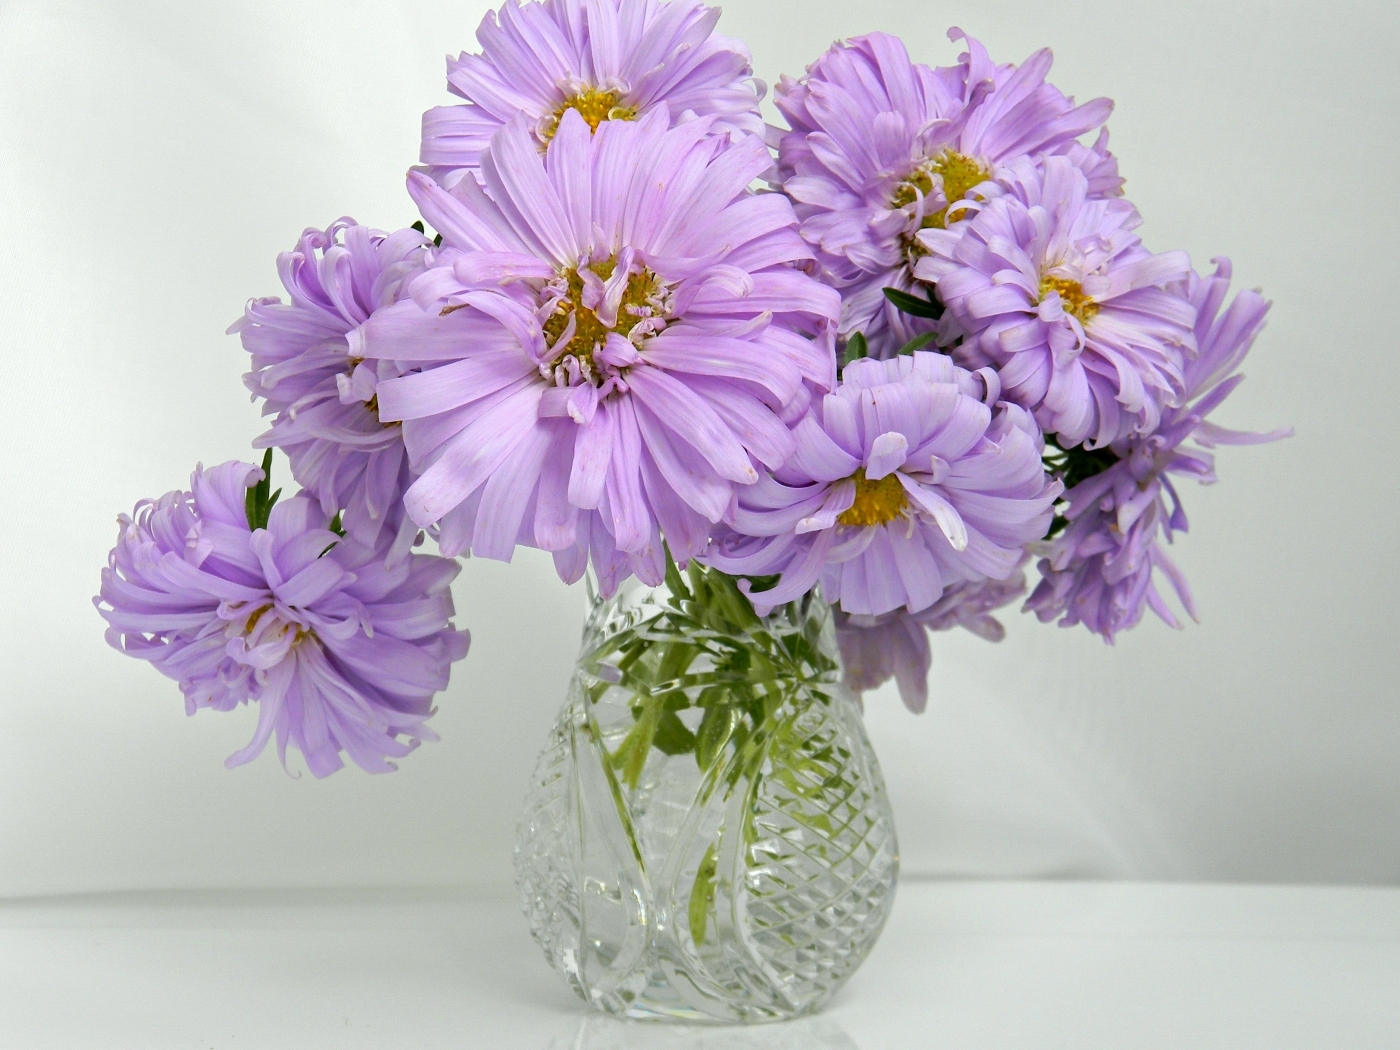 Скачать обои бесплатно Цветы, Растения, Букеты картинка на рабочий стол ПК